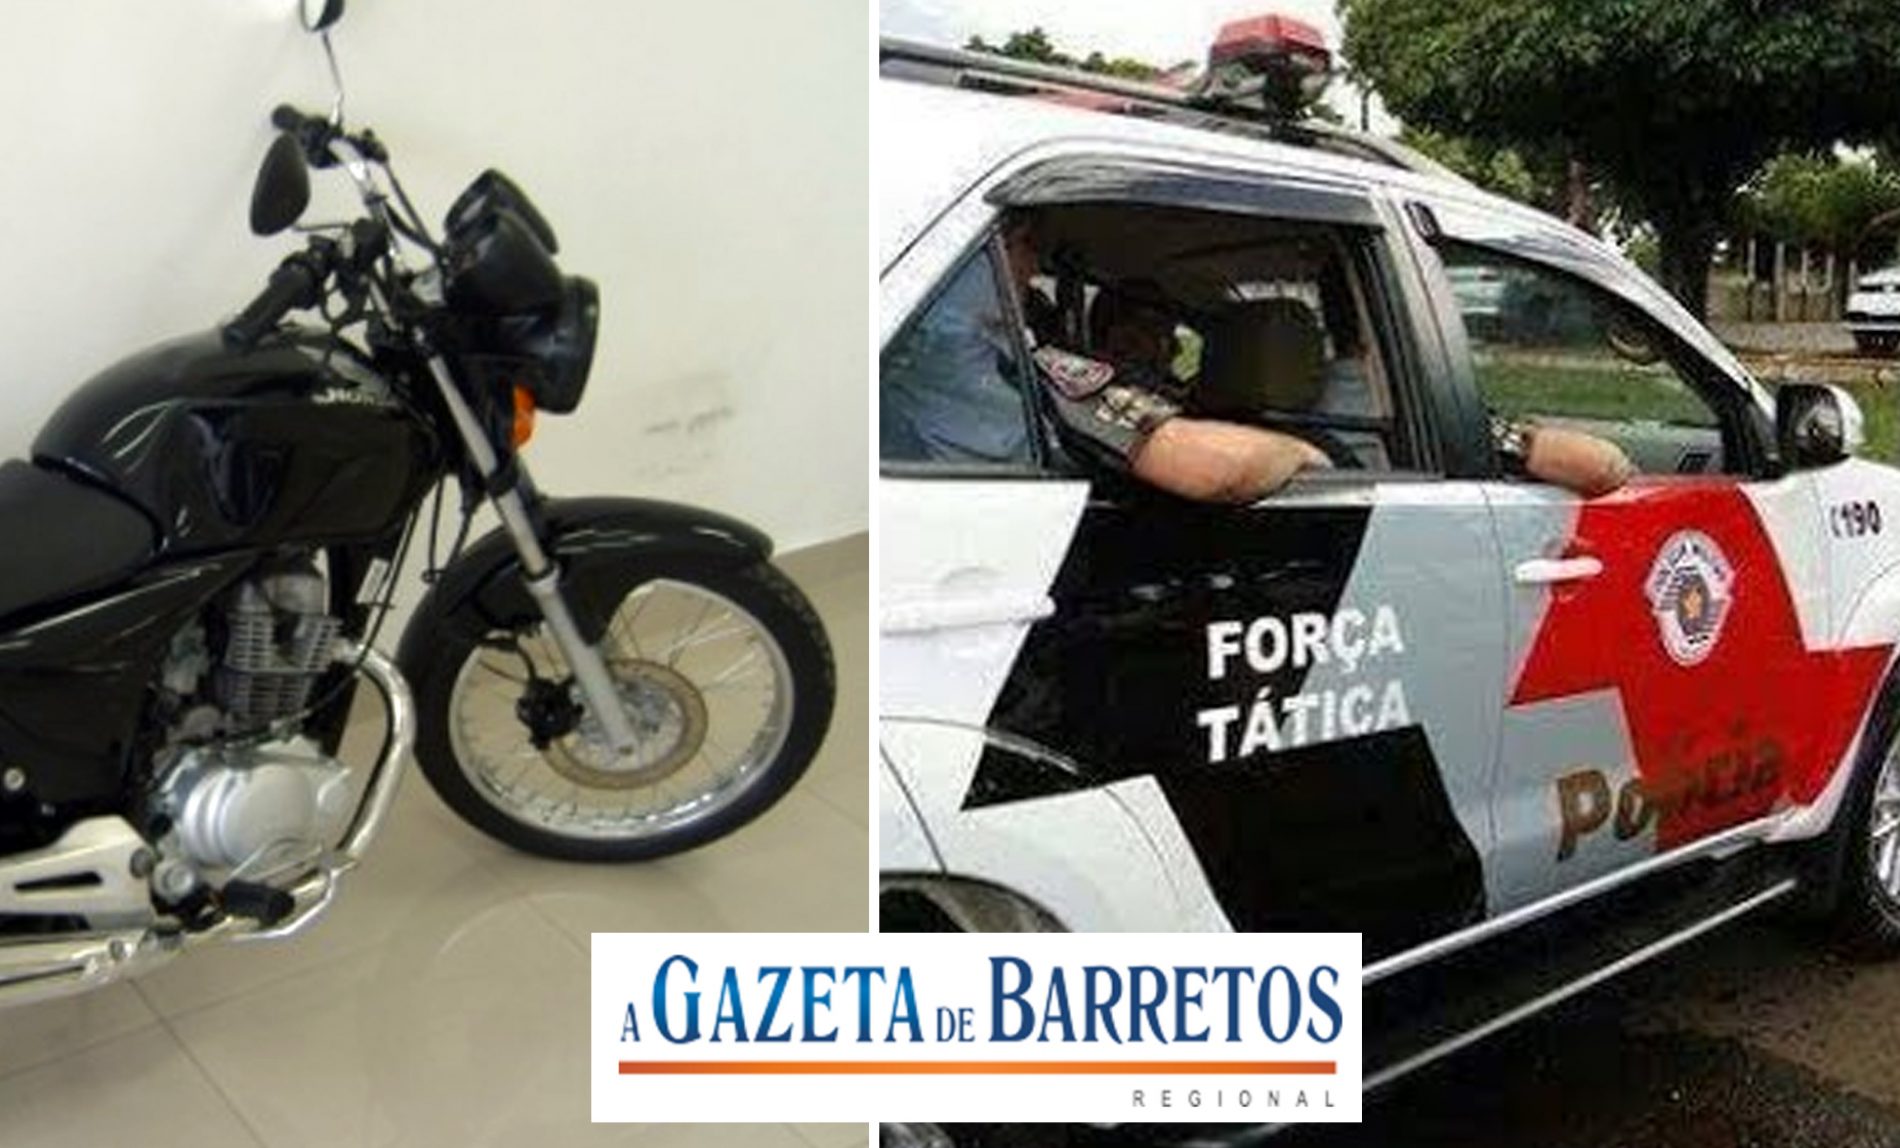 BARRETOS: Policia Militar detém menor e recupera 11 motos furtadas no pátio da prefeitura